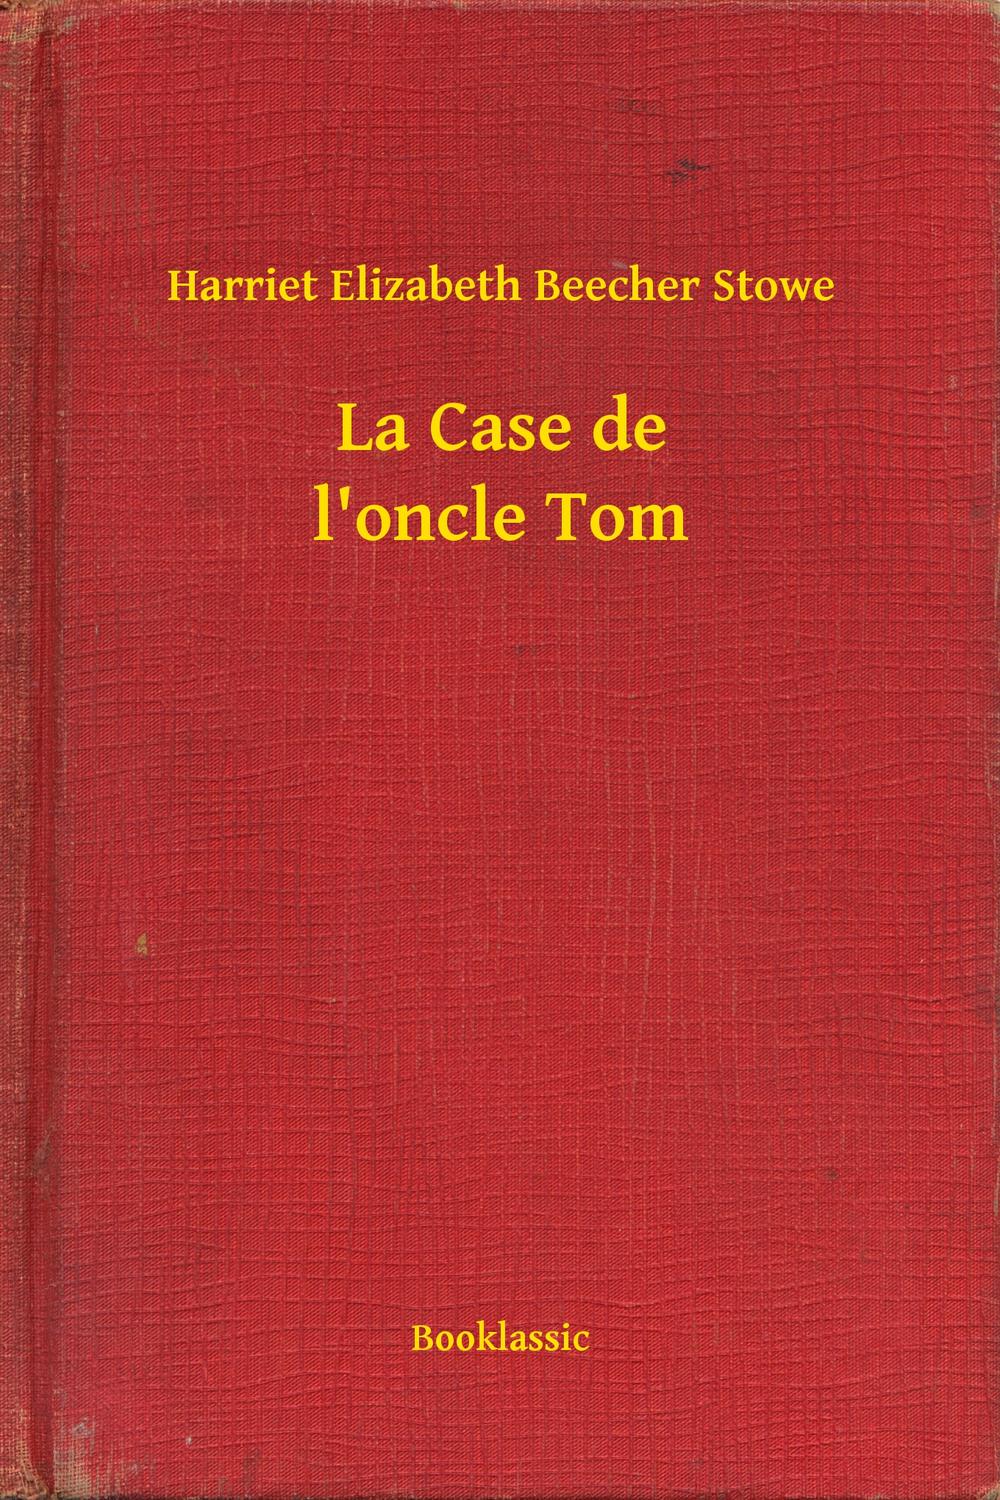 La Case de l'oncle Tom - Harriet Elizabeth Beecher Stowe,,